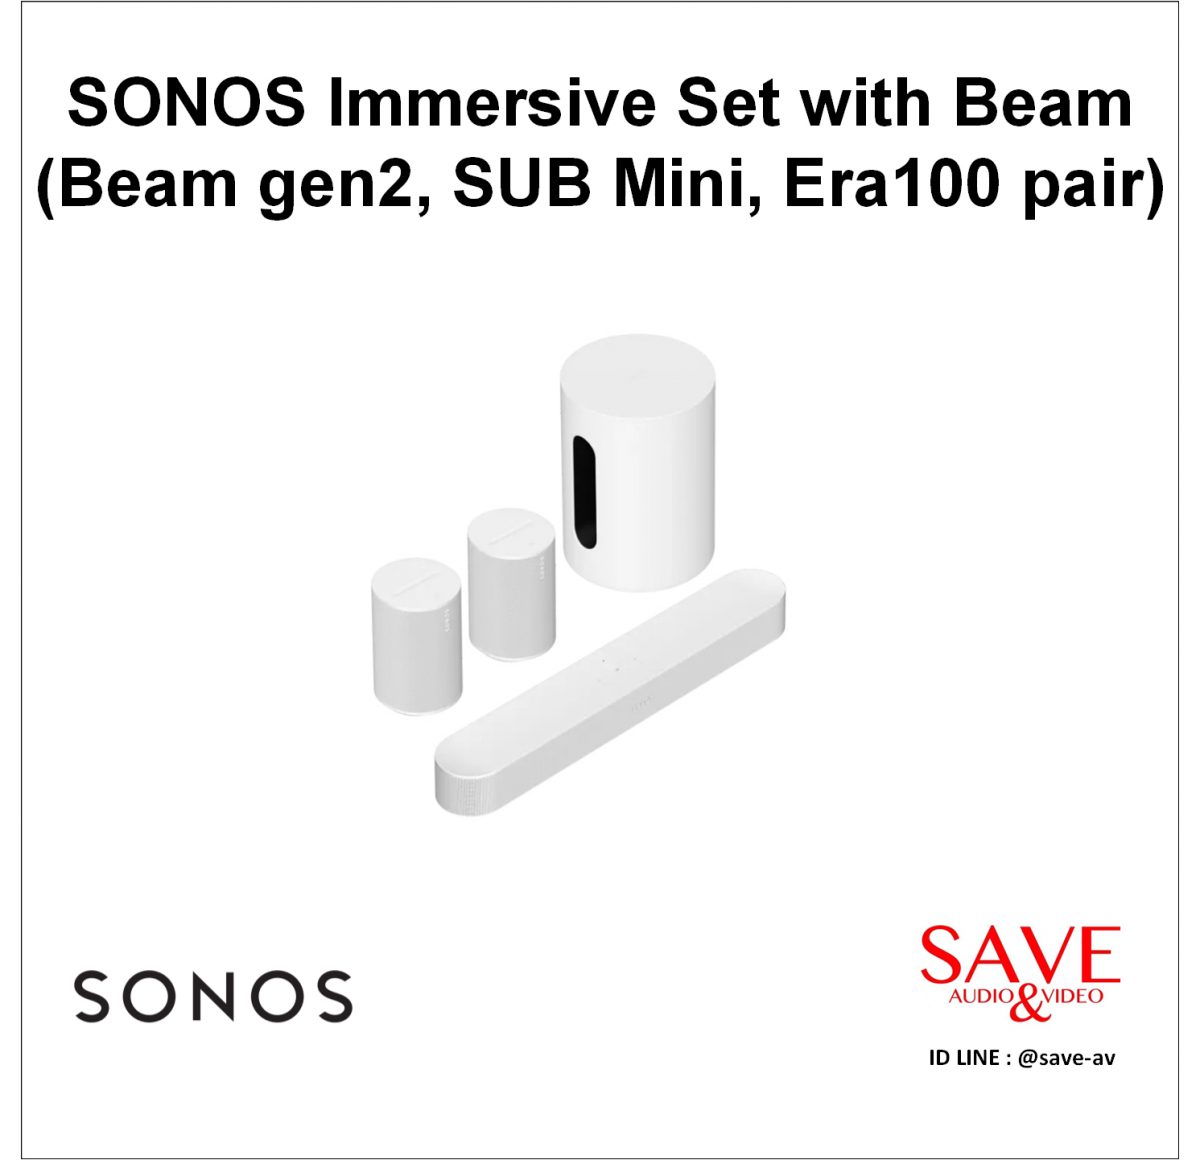 Sonos Thailand SONOS Immersive Set with Beam (Beam gen2, SUB Mini, Era100 pair)